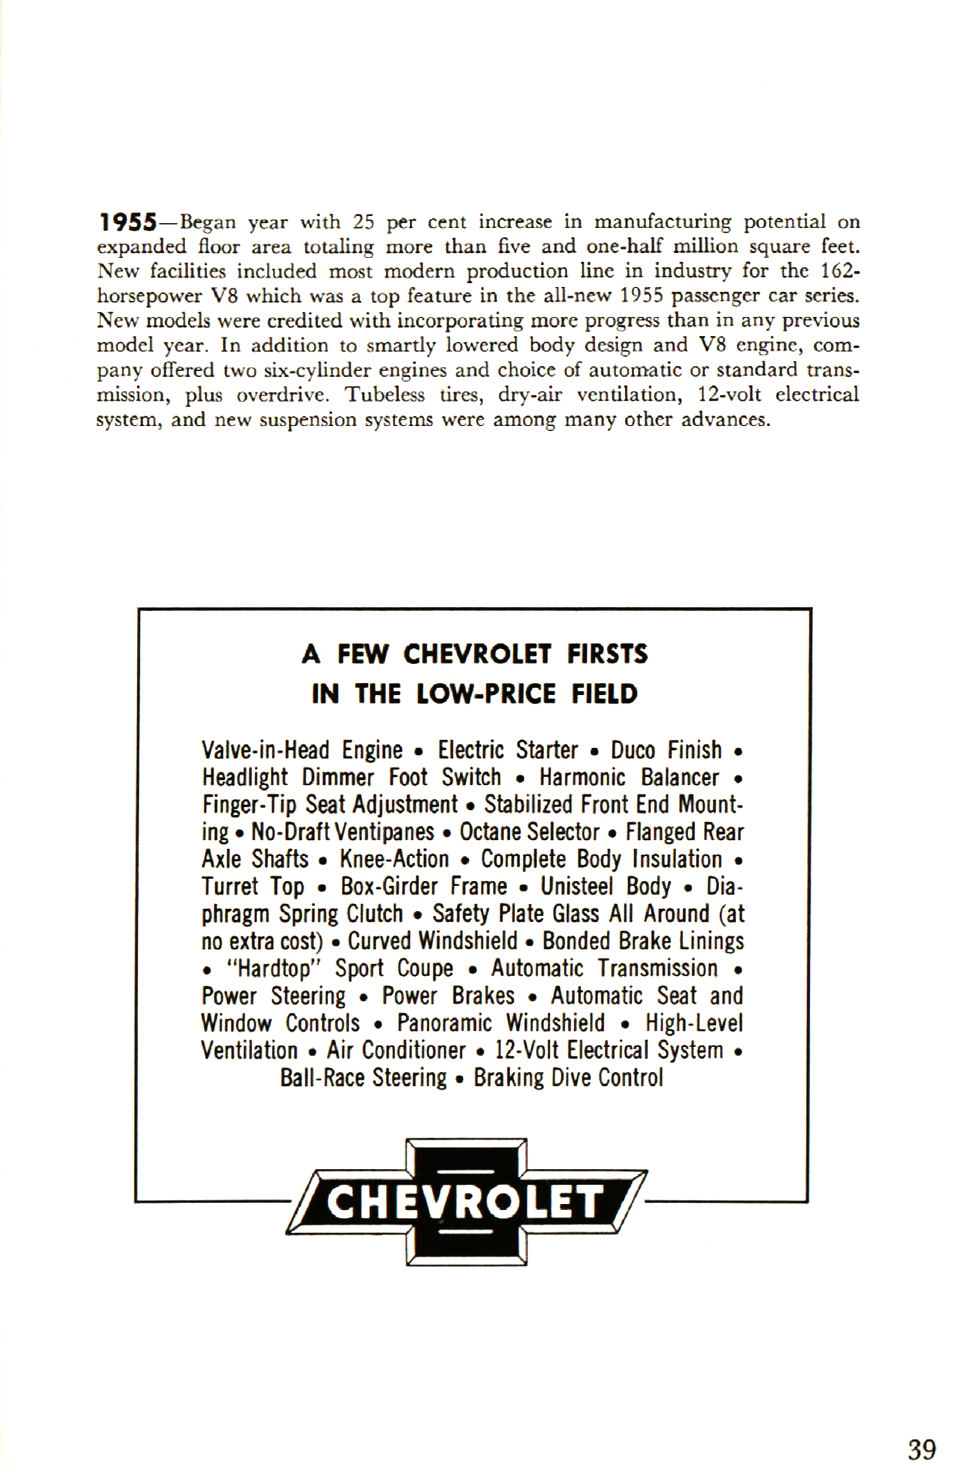 1955_Chevrolet_Story-39